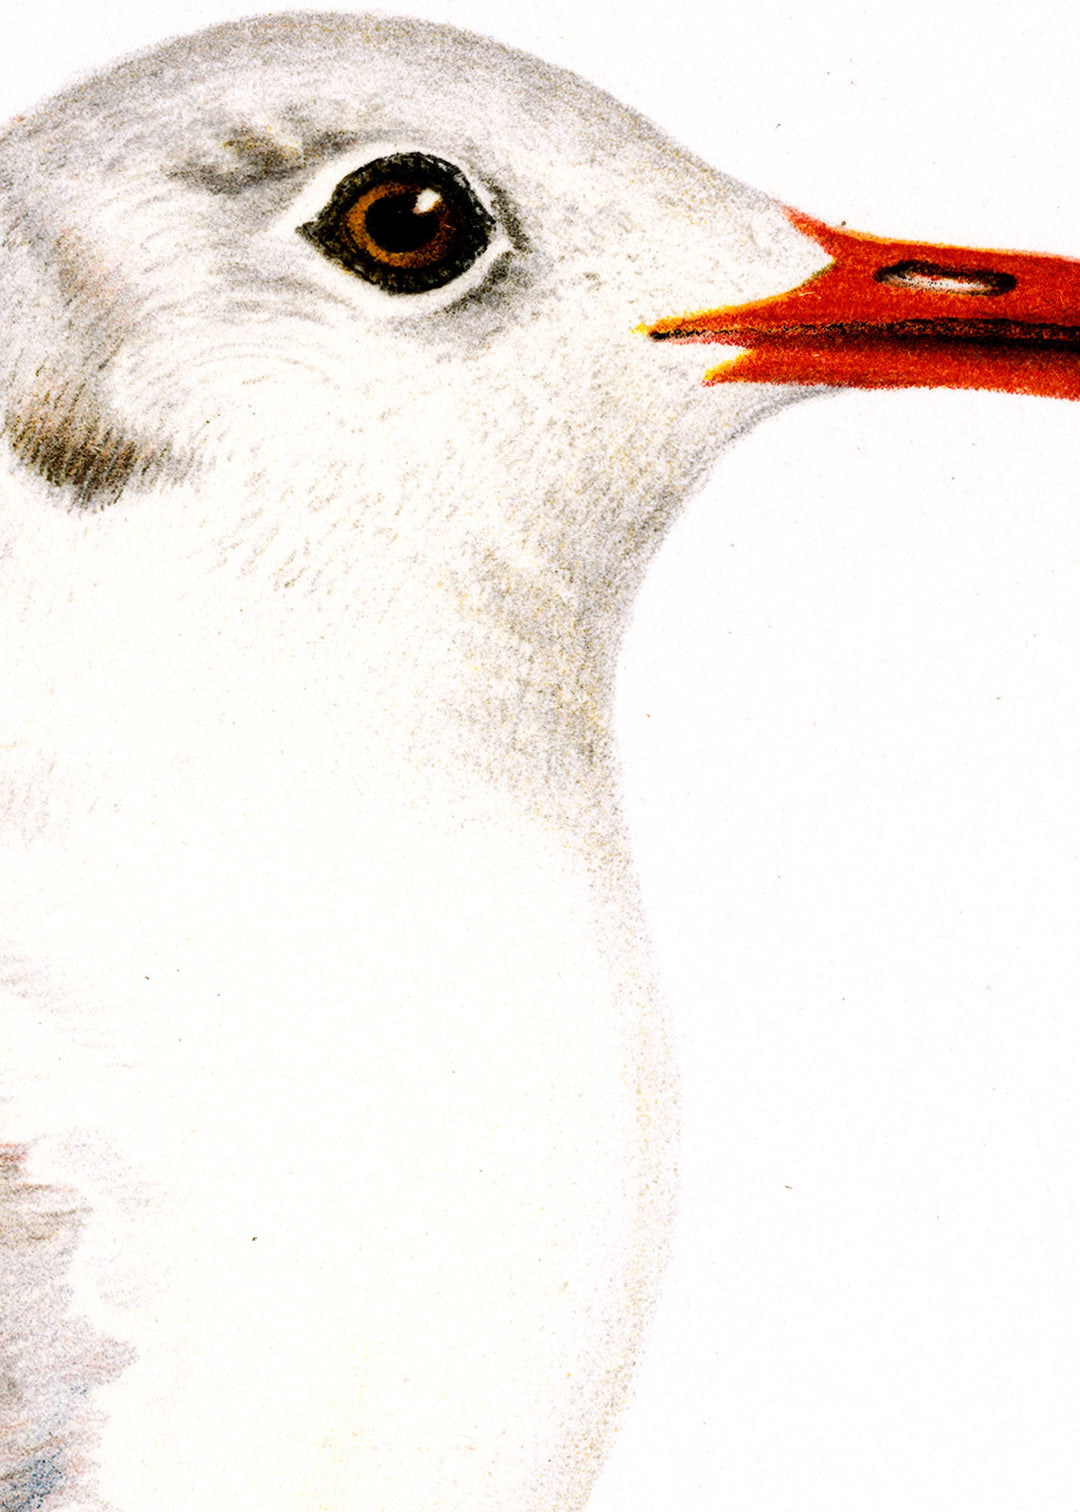 Fågeln Skrattmås, vinterdräkt på klassisk vintage poster/affisch